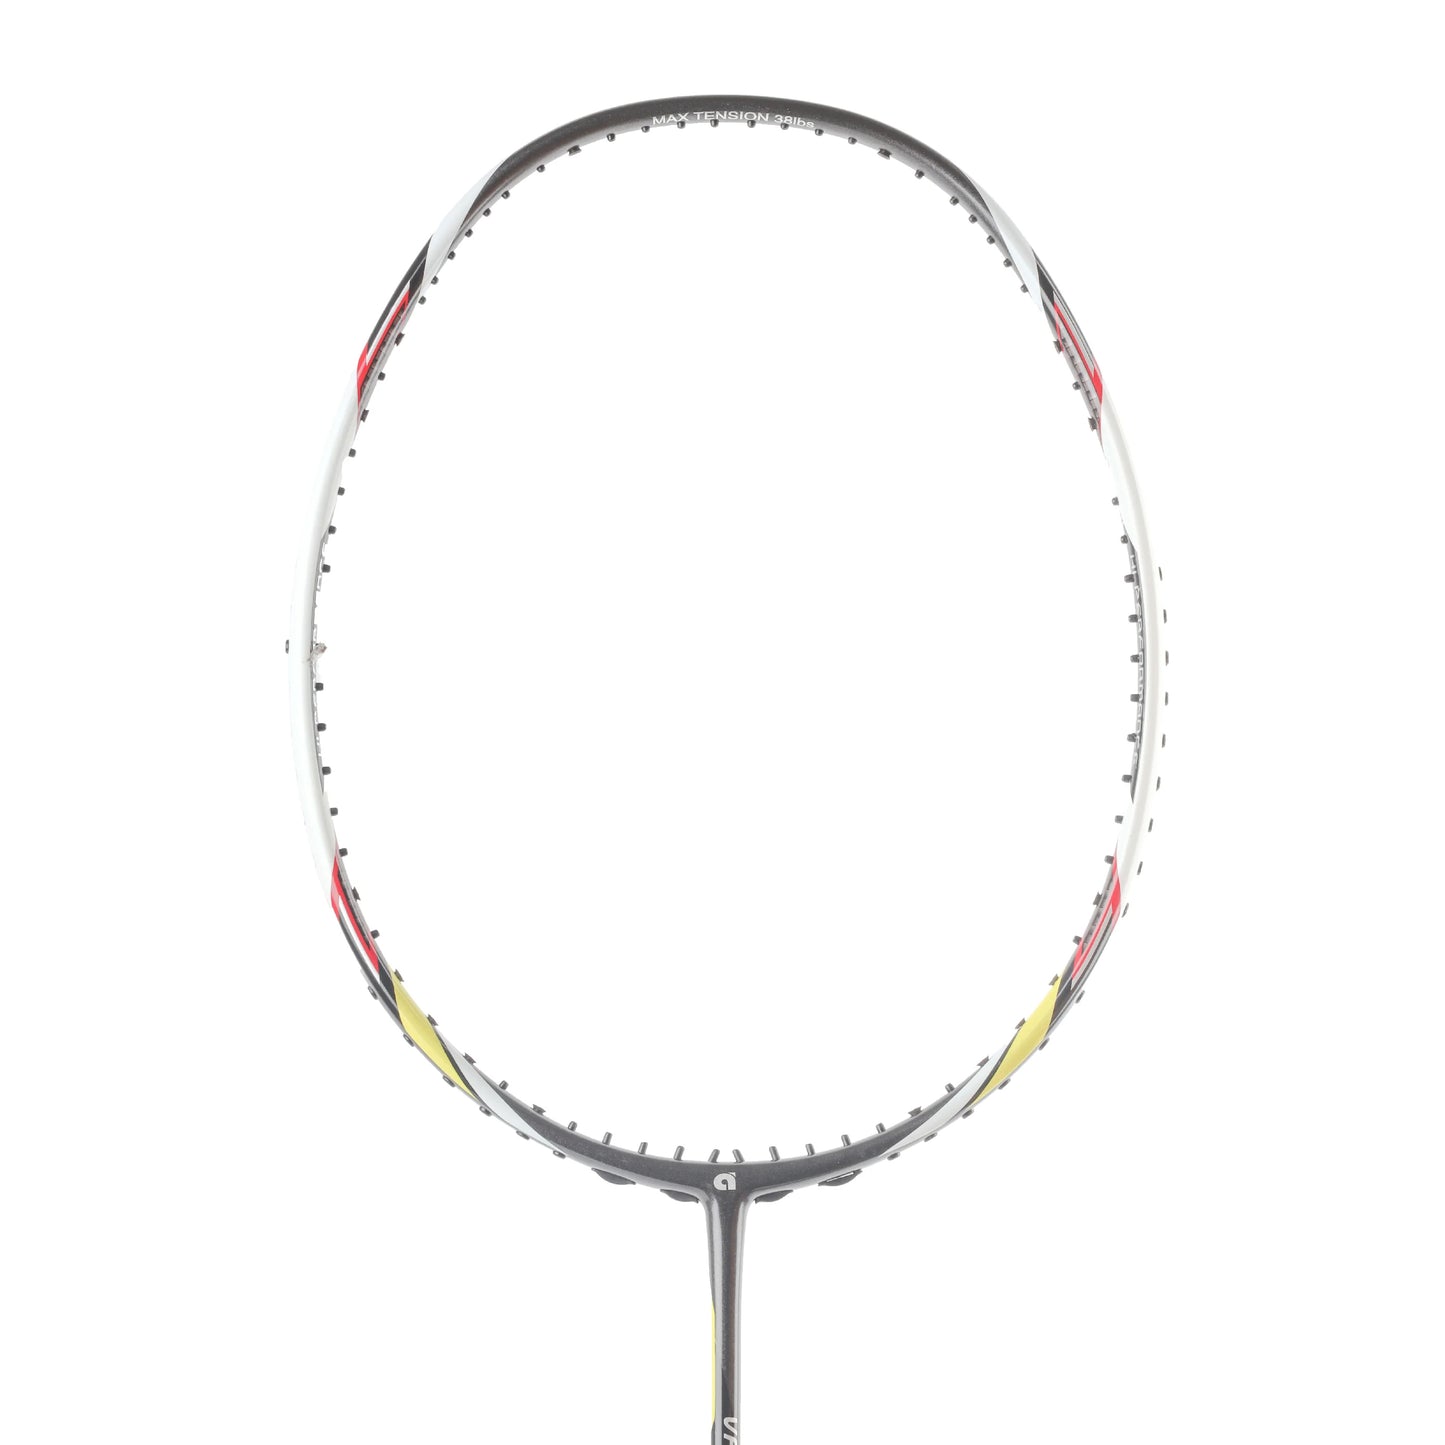 Apacs Vanguard 11 Unstrung Badminton Racquet - without Cover - Best Price online Prokicksports.com